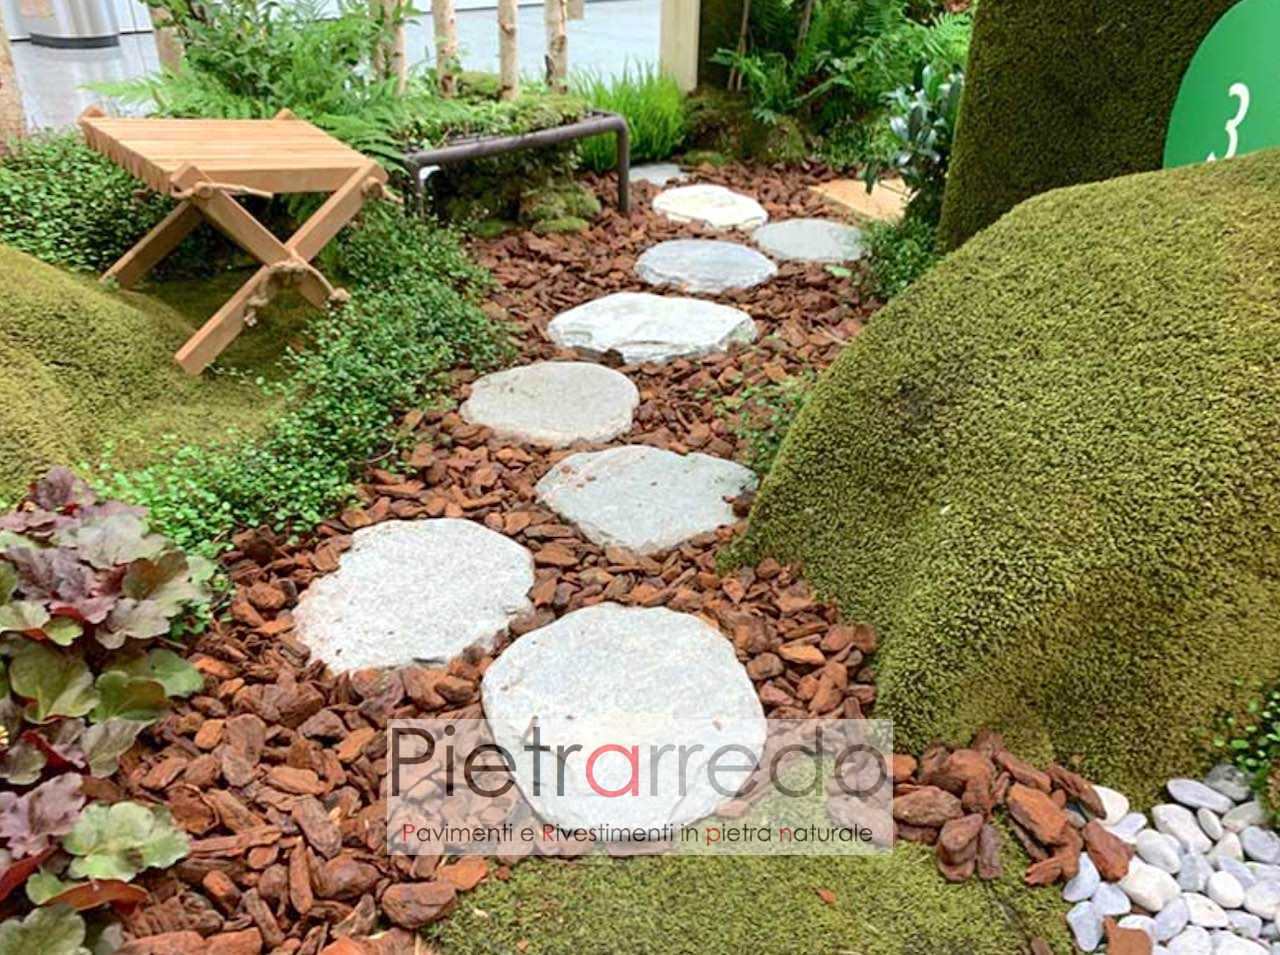 pietre rotonde anticate per passaggi prato giardino passi giapponesi zen pietrarredo milano costo prezzo